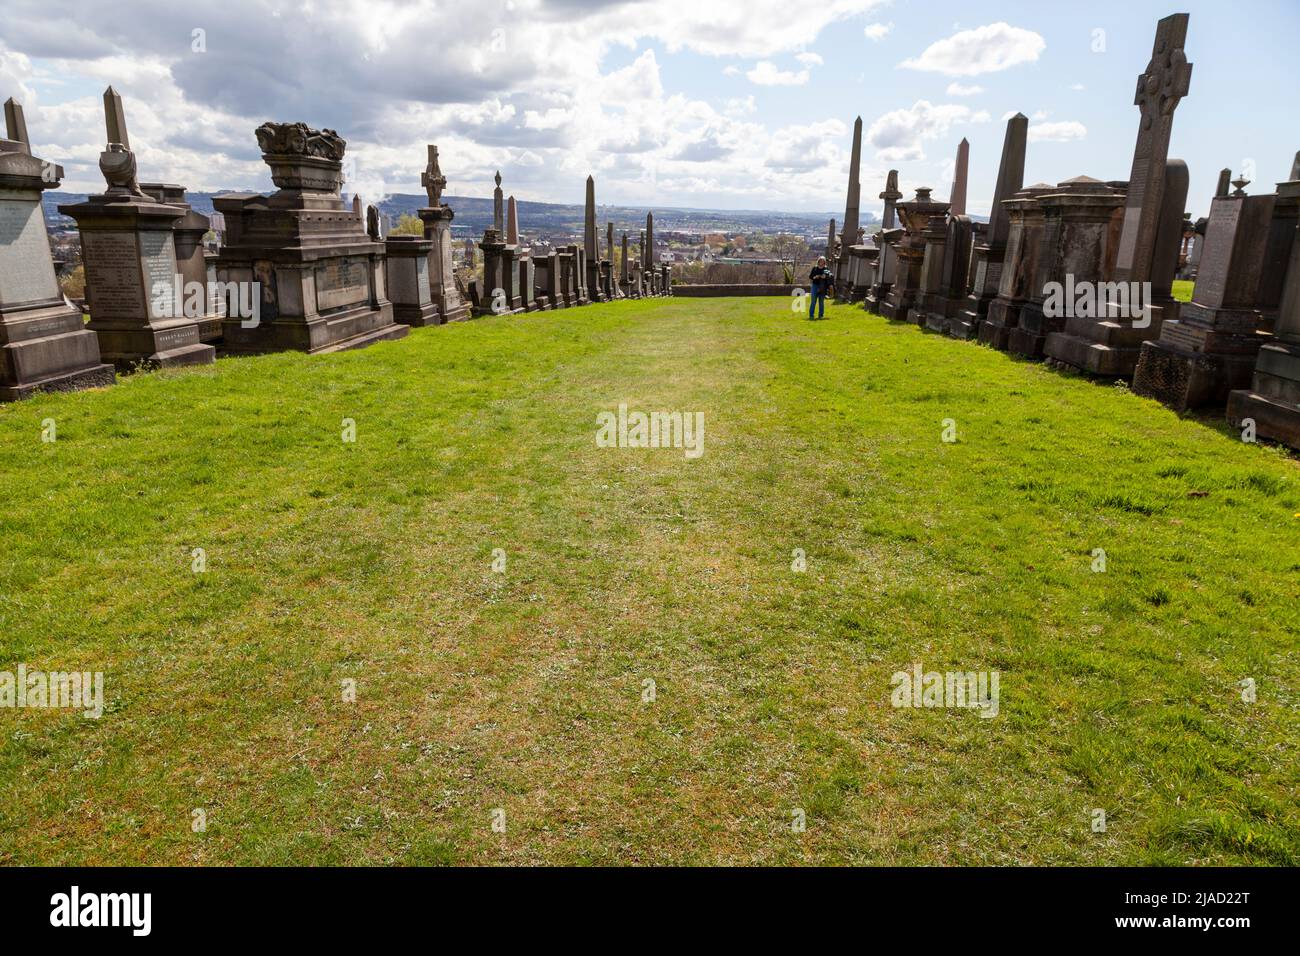 Necrópolis de Glasgow: “Ciudad victoriana de los muertos”, cerca de la catedral de Glasgow, con monumentos conmemorativos a John Knox y otros prominentes escoceses Foto de stock